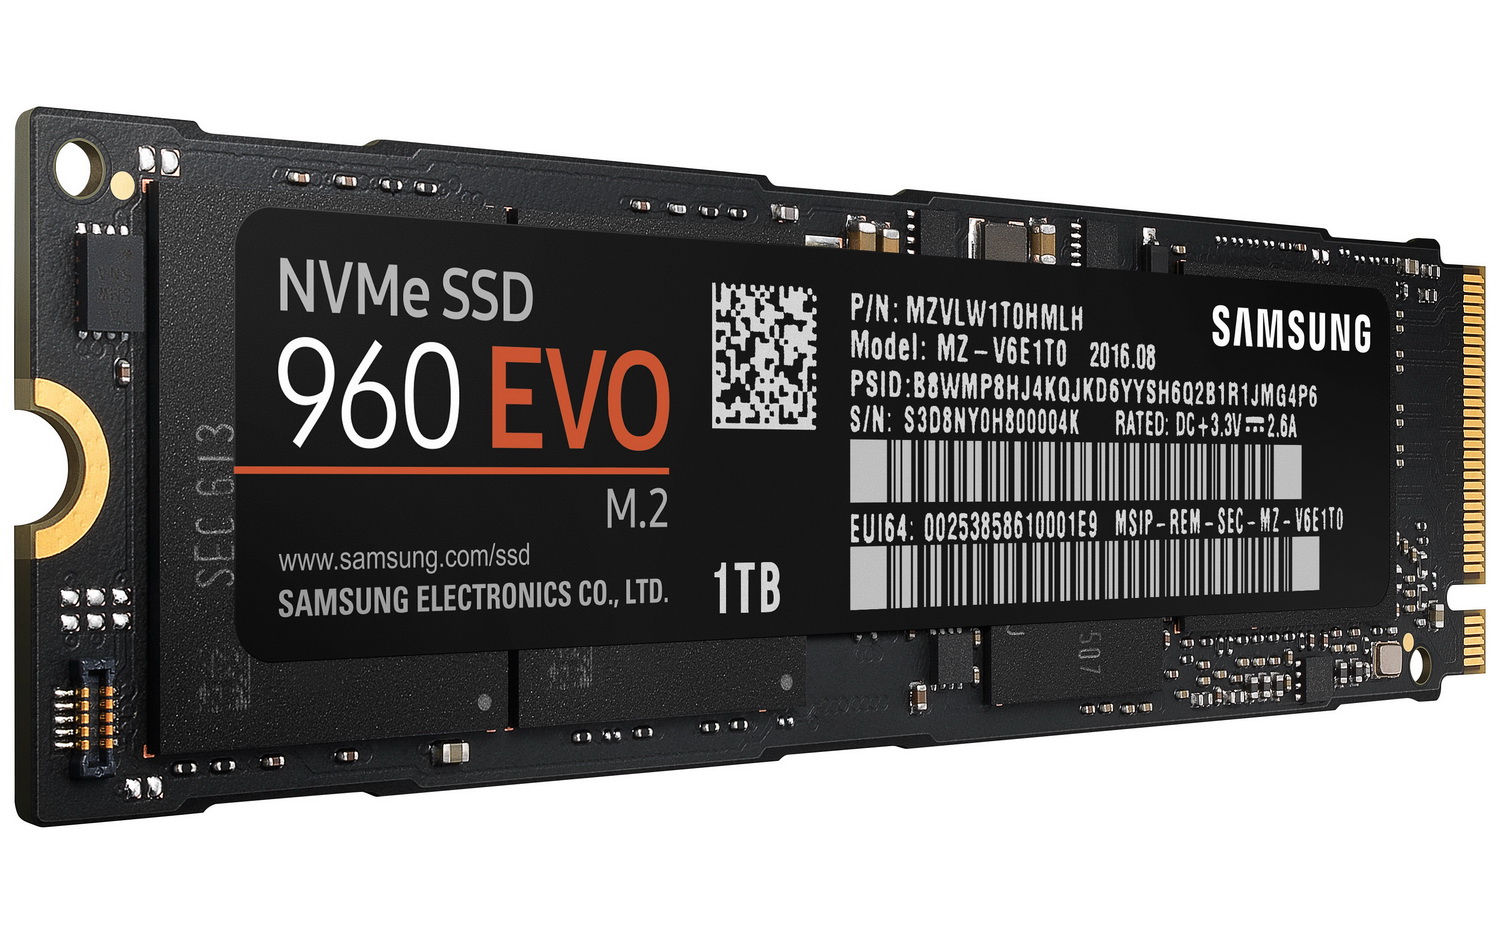 Samsung 960 EVO/960 PRO, nuevos SSDs M.2 con velocidades de hasta 3,500 MB/s